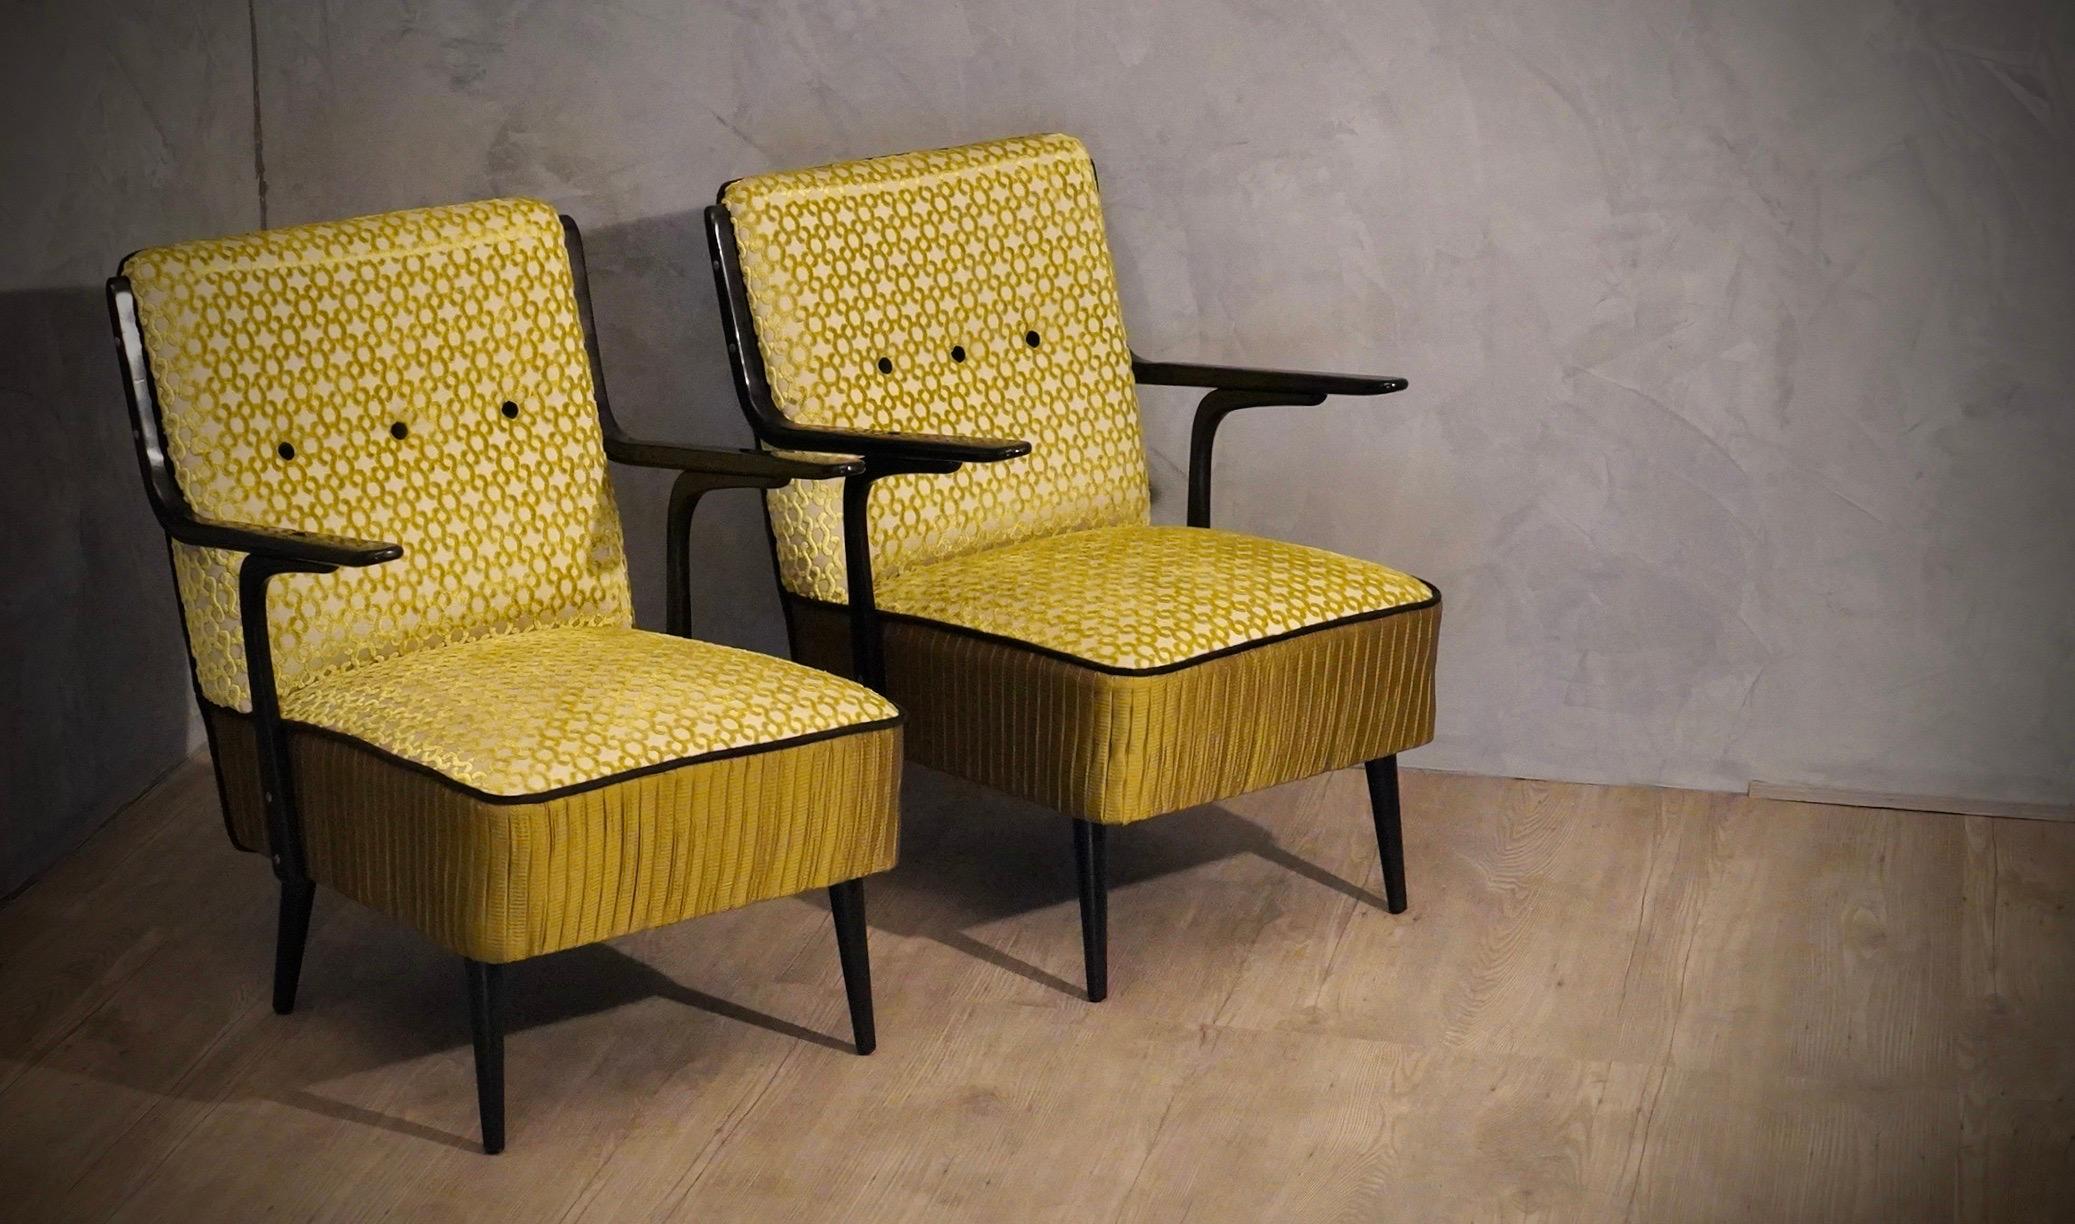 Paire de fauteuils très épurés et architecturaux dans son design. Sagement restauré par notre atelier de tapisserie d'ameublement, une combinaison de tissus a été choisie pour mettre en valeur la beauté du fauteuil.

Le tout recouvert d'un tissu de